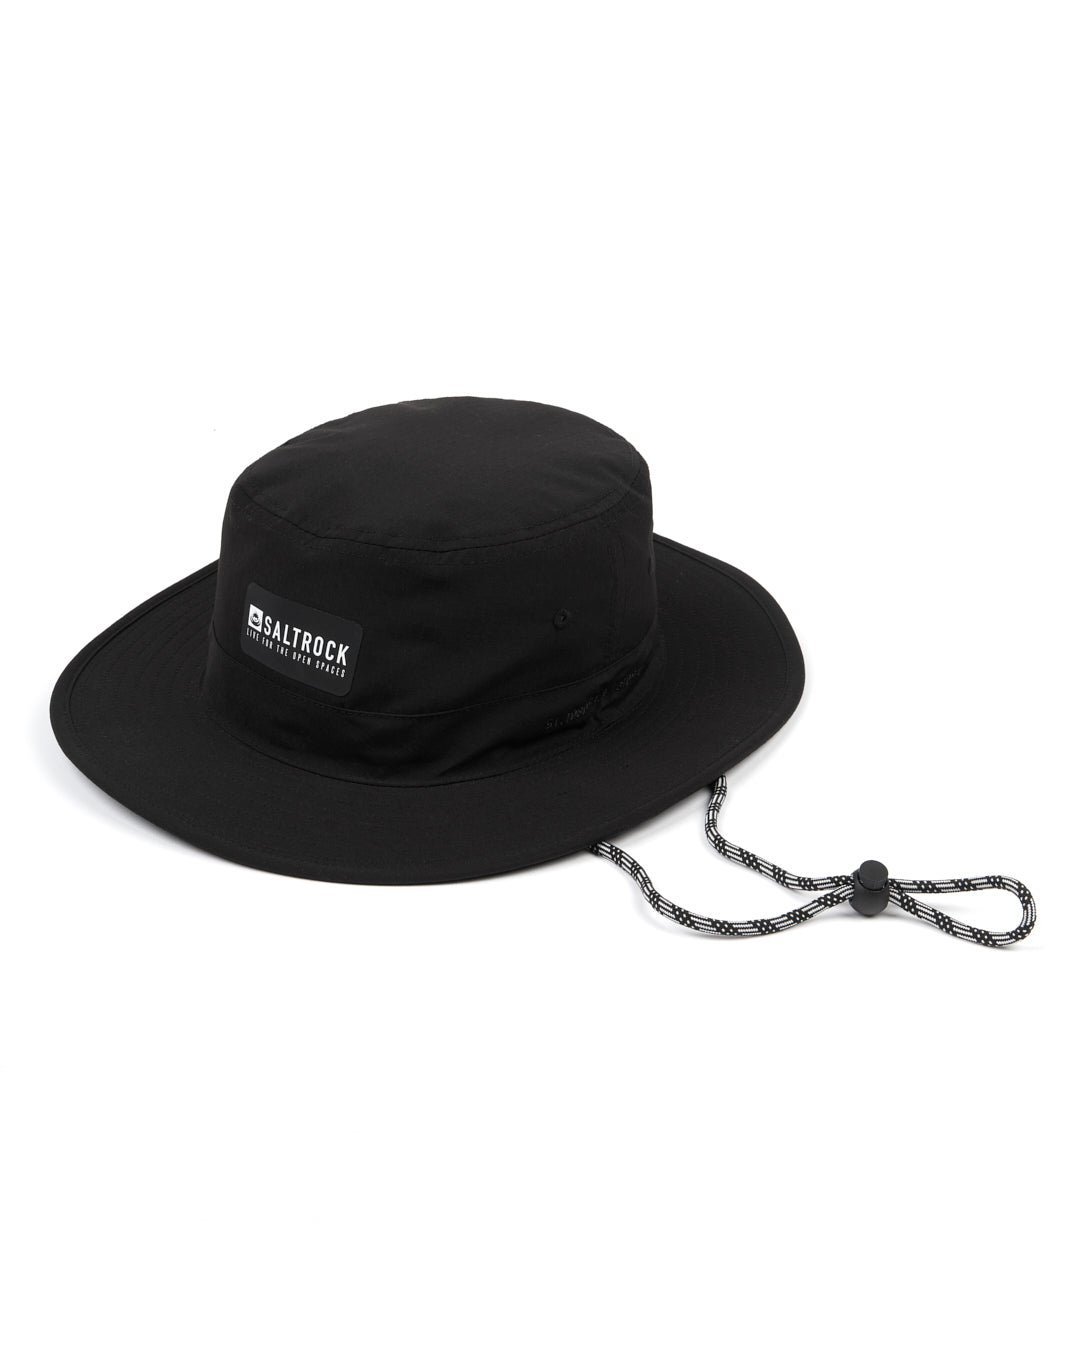 Gaitor Hat